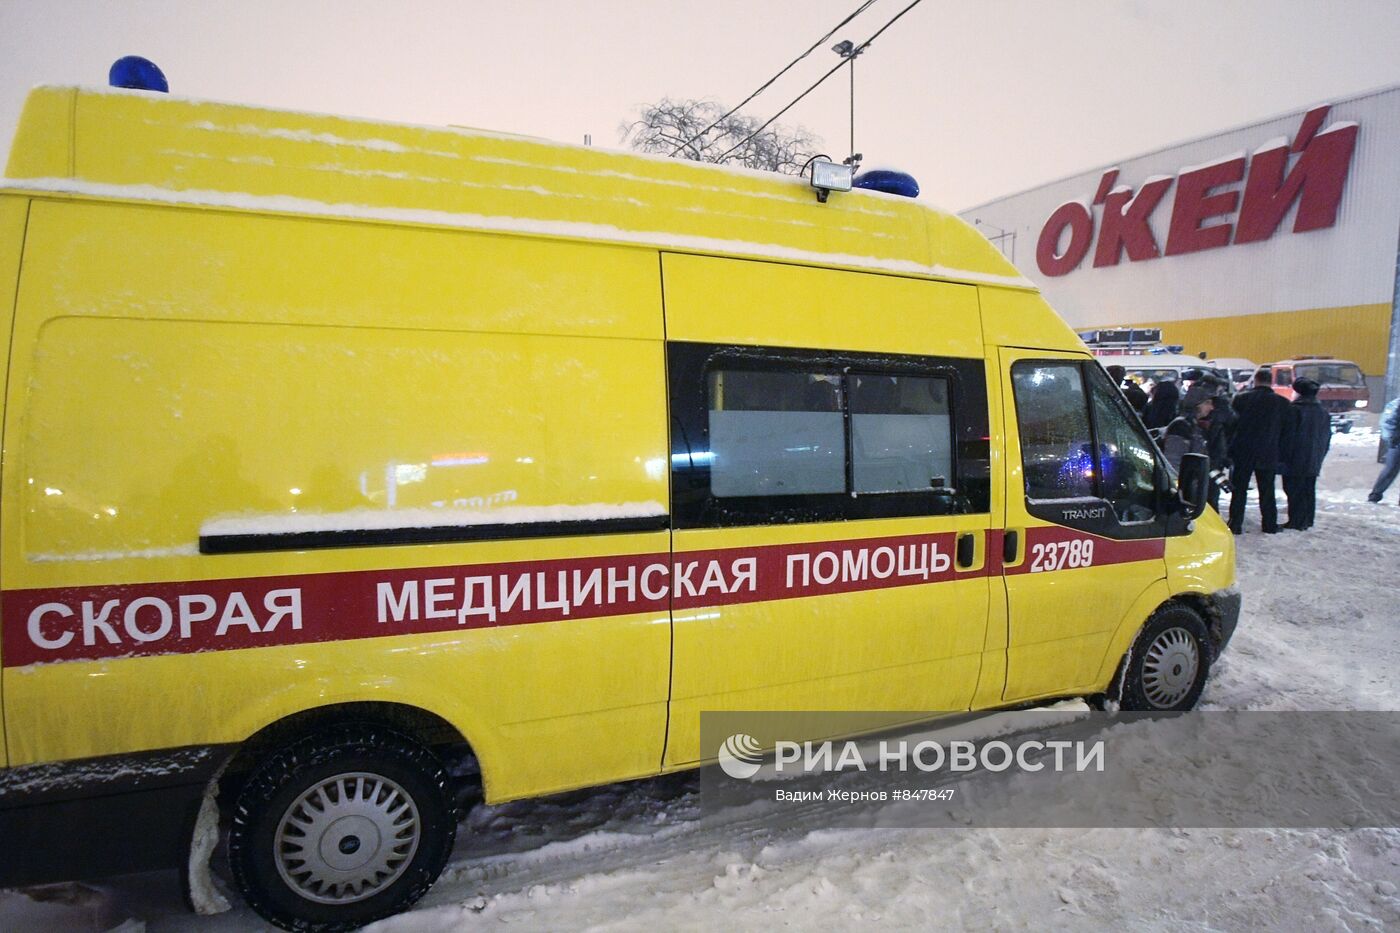 Обрушение кровли в сетевом магазине "О'кей" в Санкт-Петербурге